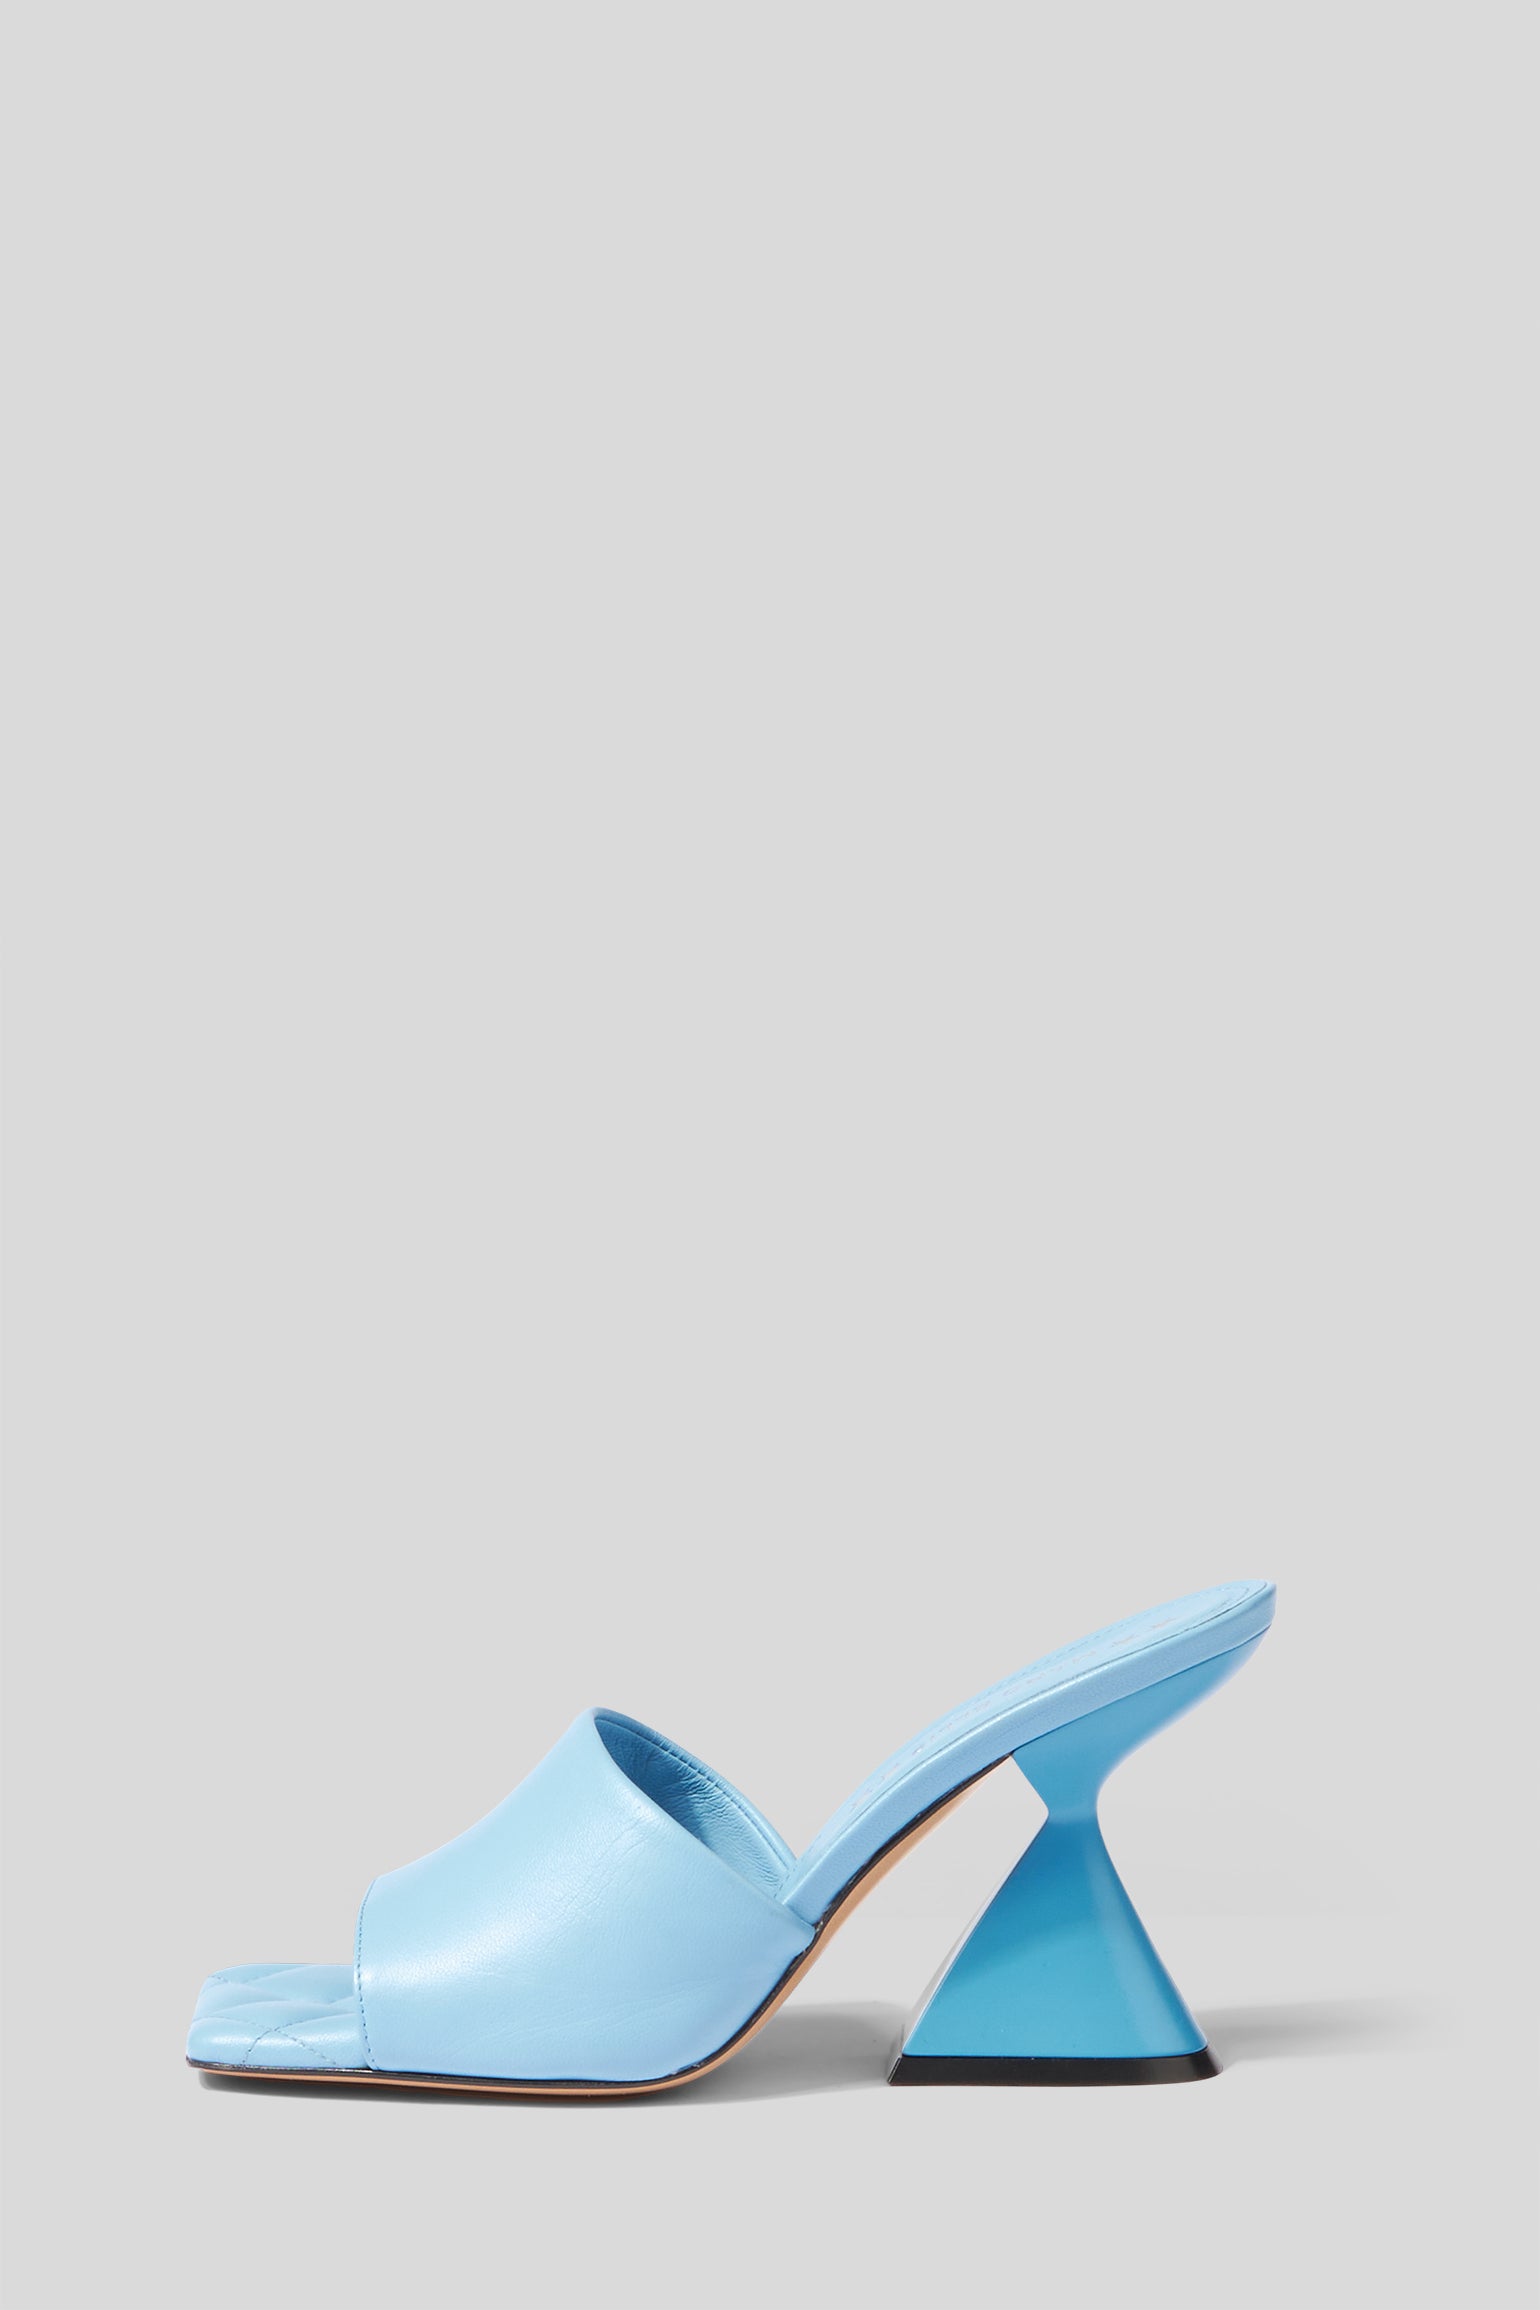 Hellblaue Sandale mit Absatz von Marc Ellis